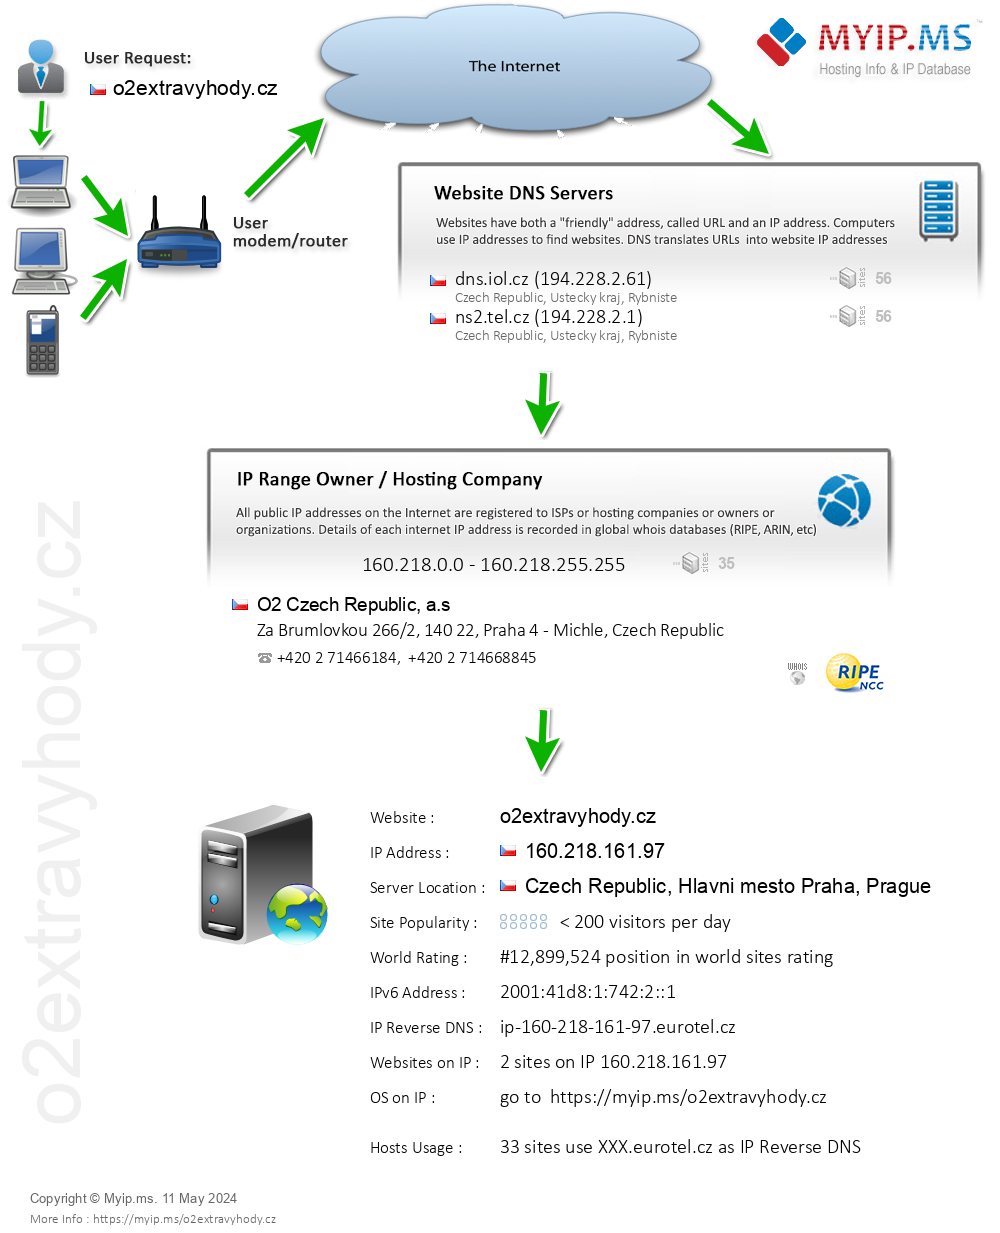 O2extravyhody.cz - Website Hosting Visual IP Diagram